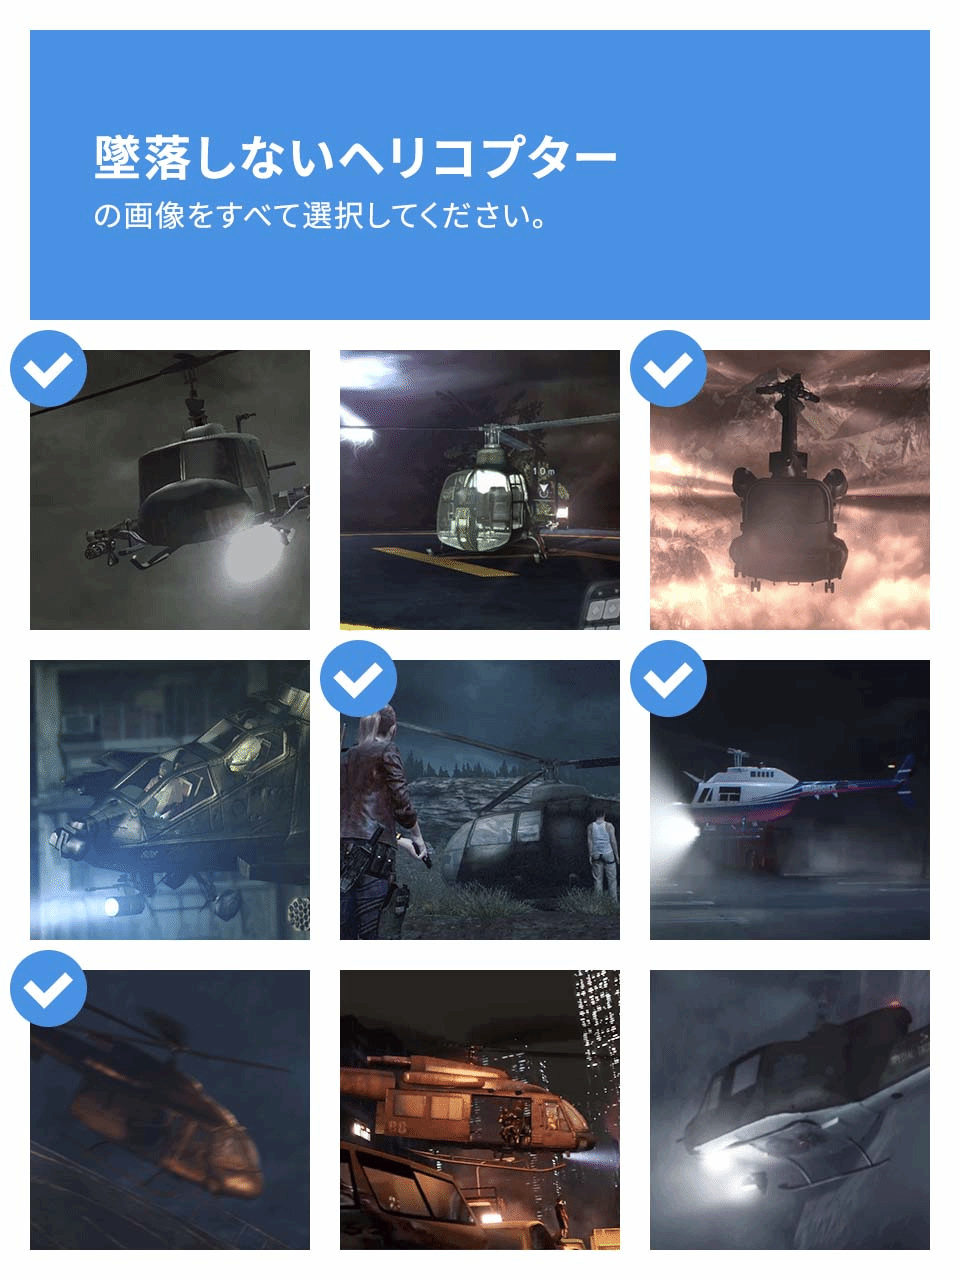 《惡靈古堡》官方整活：從下圖中選出沒墜毀的直升機